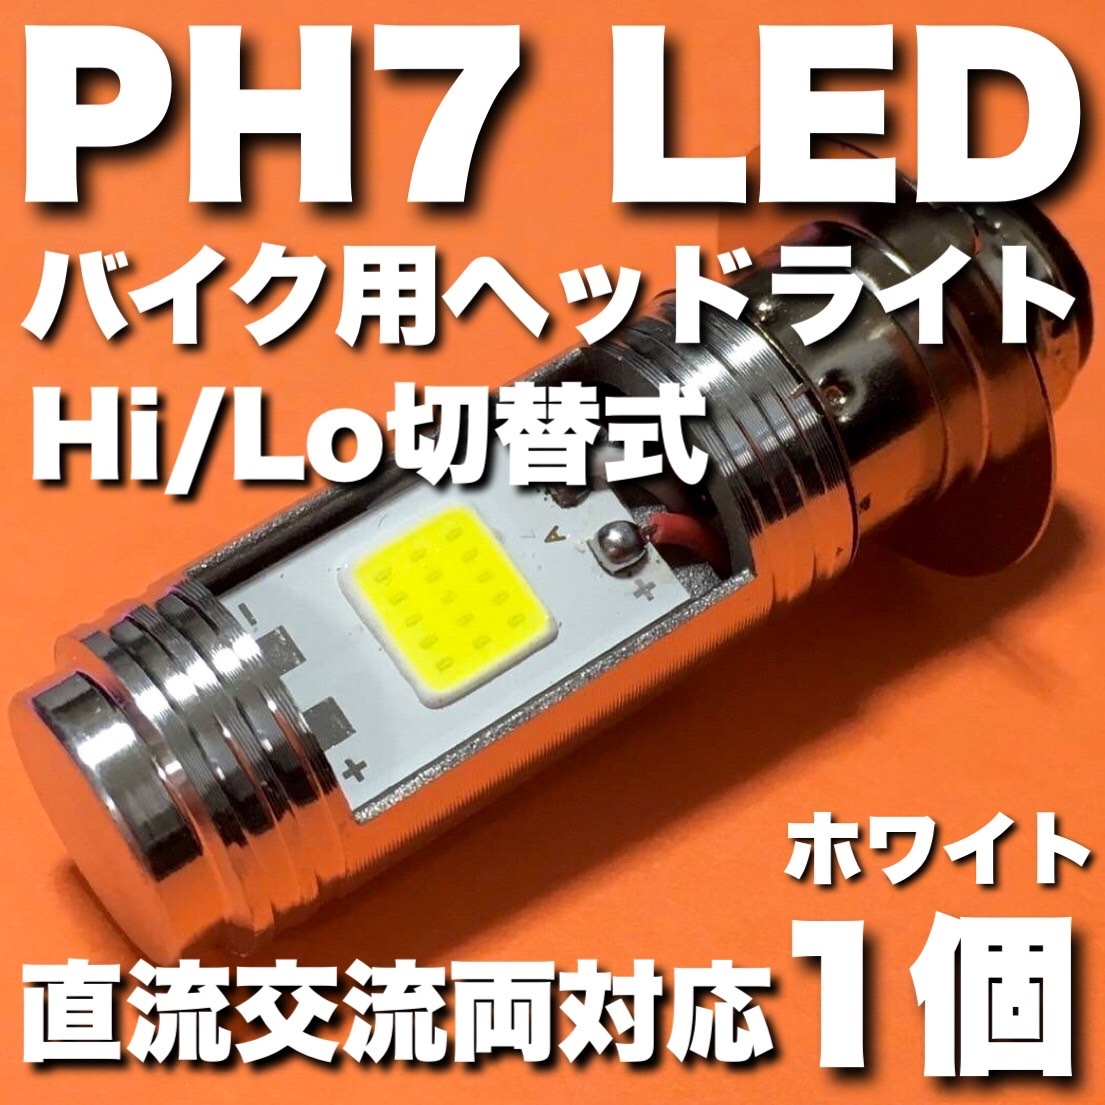 HONDA ホンダ スーパーカブ 2007-2008 JBH-AA01 PH7 LED ヘッドライト Hi/Lo切替 バルブ 直流 交流 バイク スクーター T19L P15d ホワイト_画像1